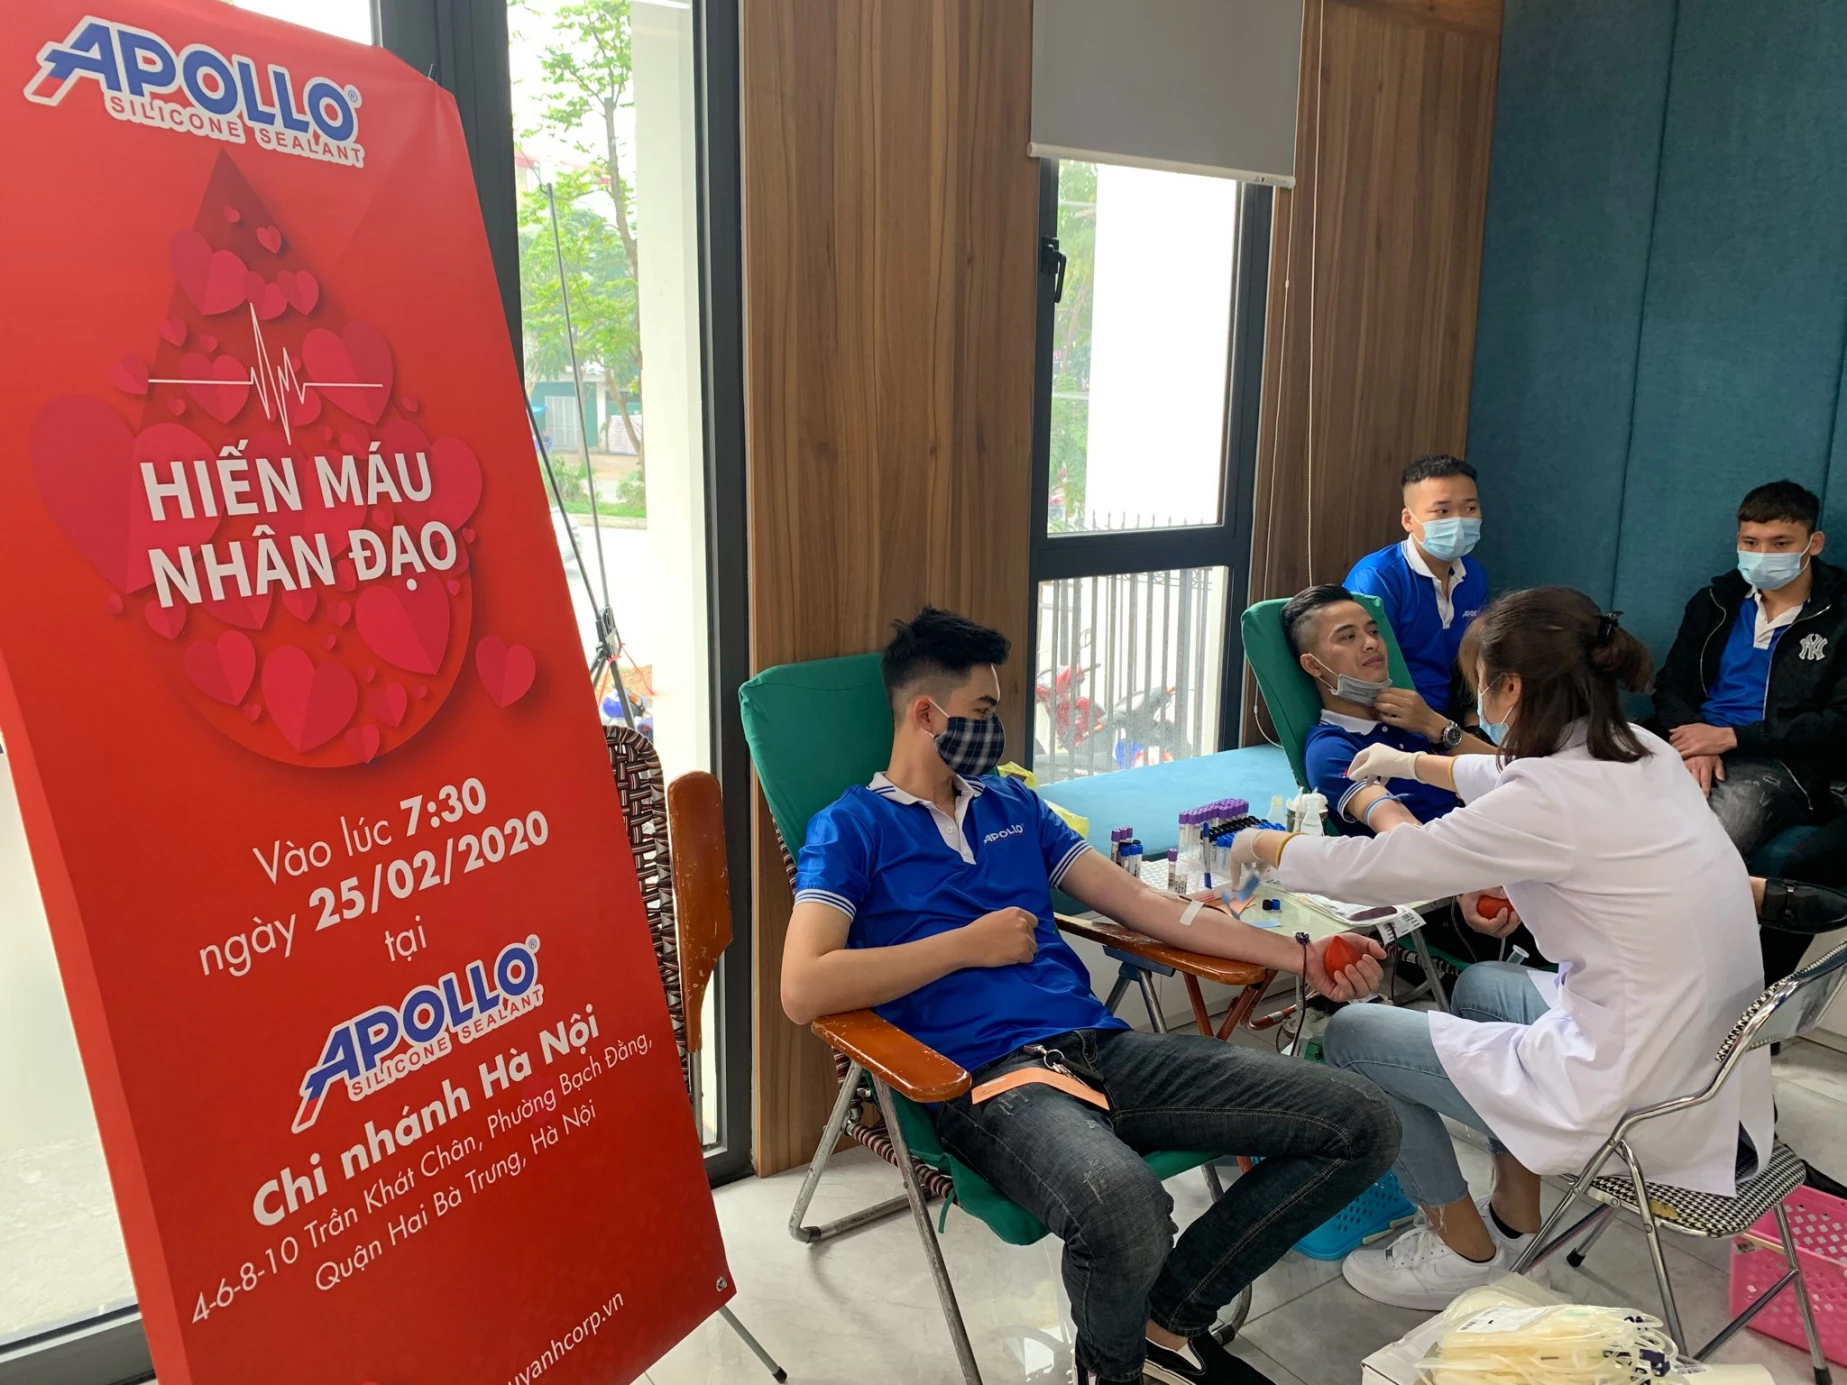 Hiến máu cứu giúp các bệnh nhân cần máu điều trị tại Bệnh viện hữu nghị Việt Đức